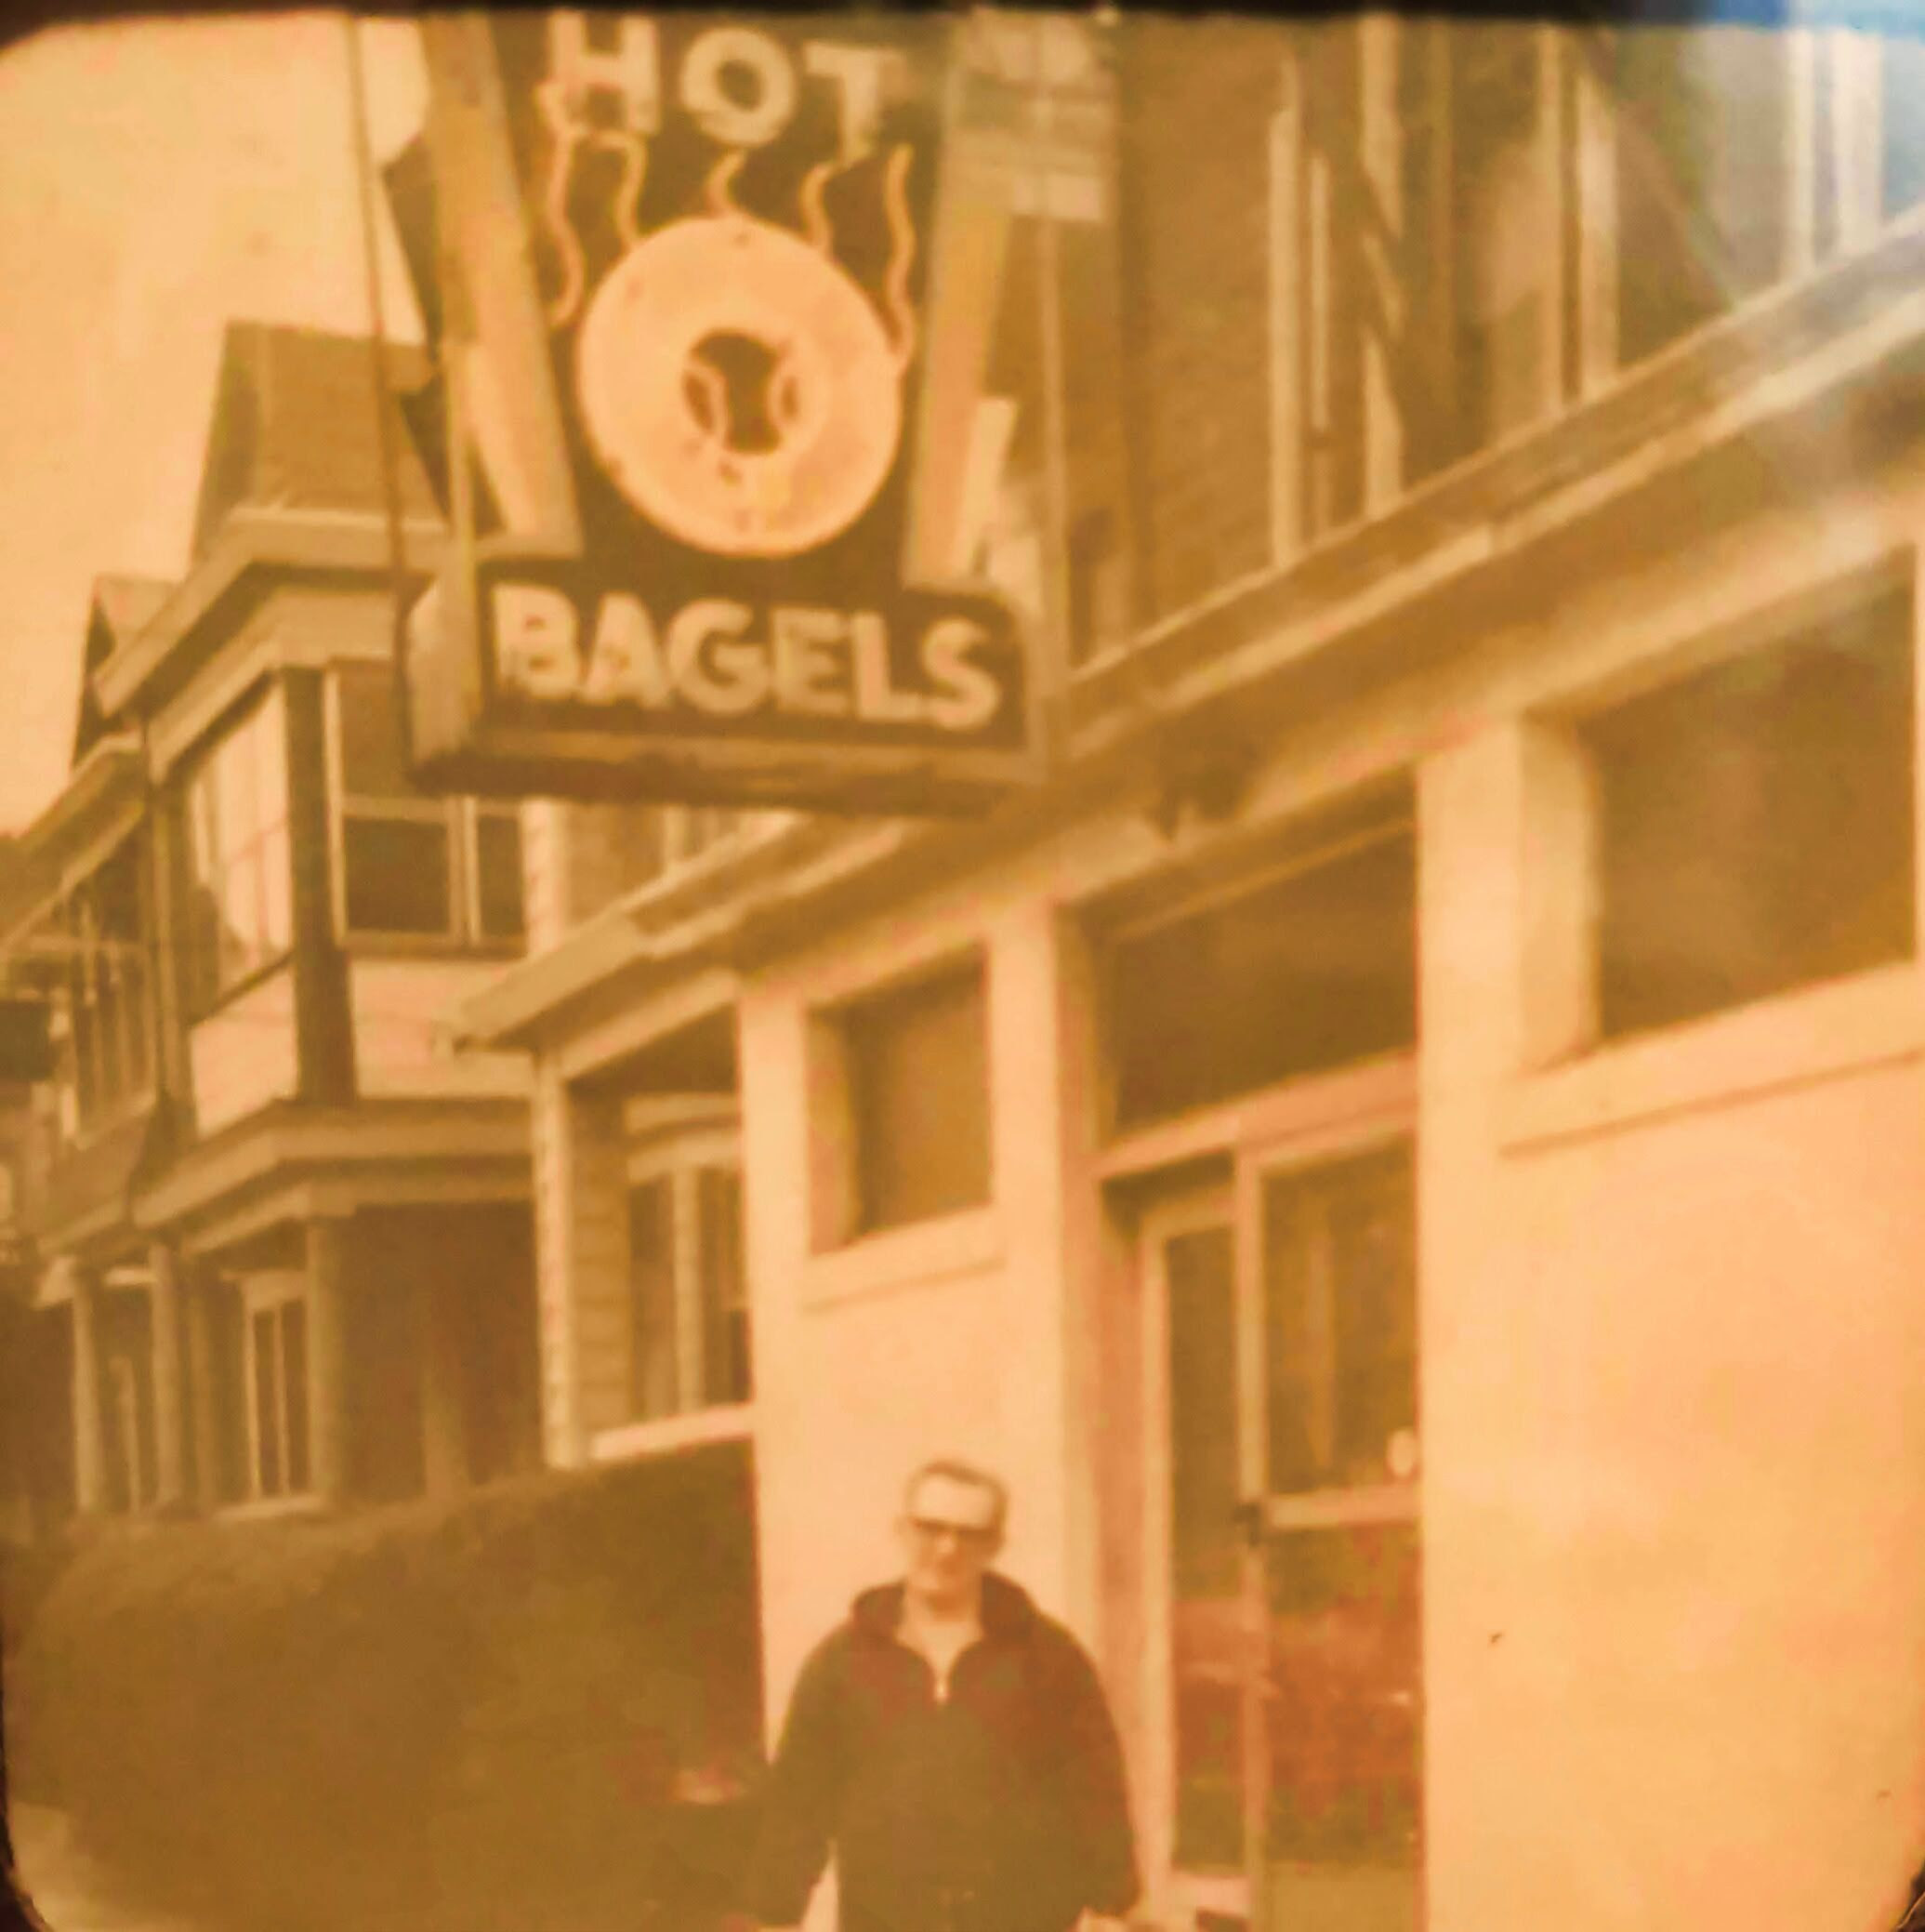 Morris Cohen under bagel sign